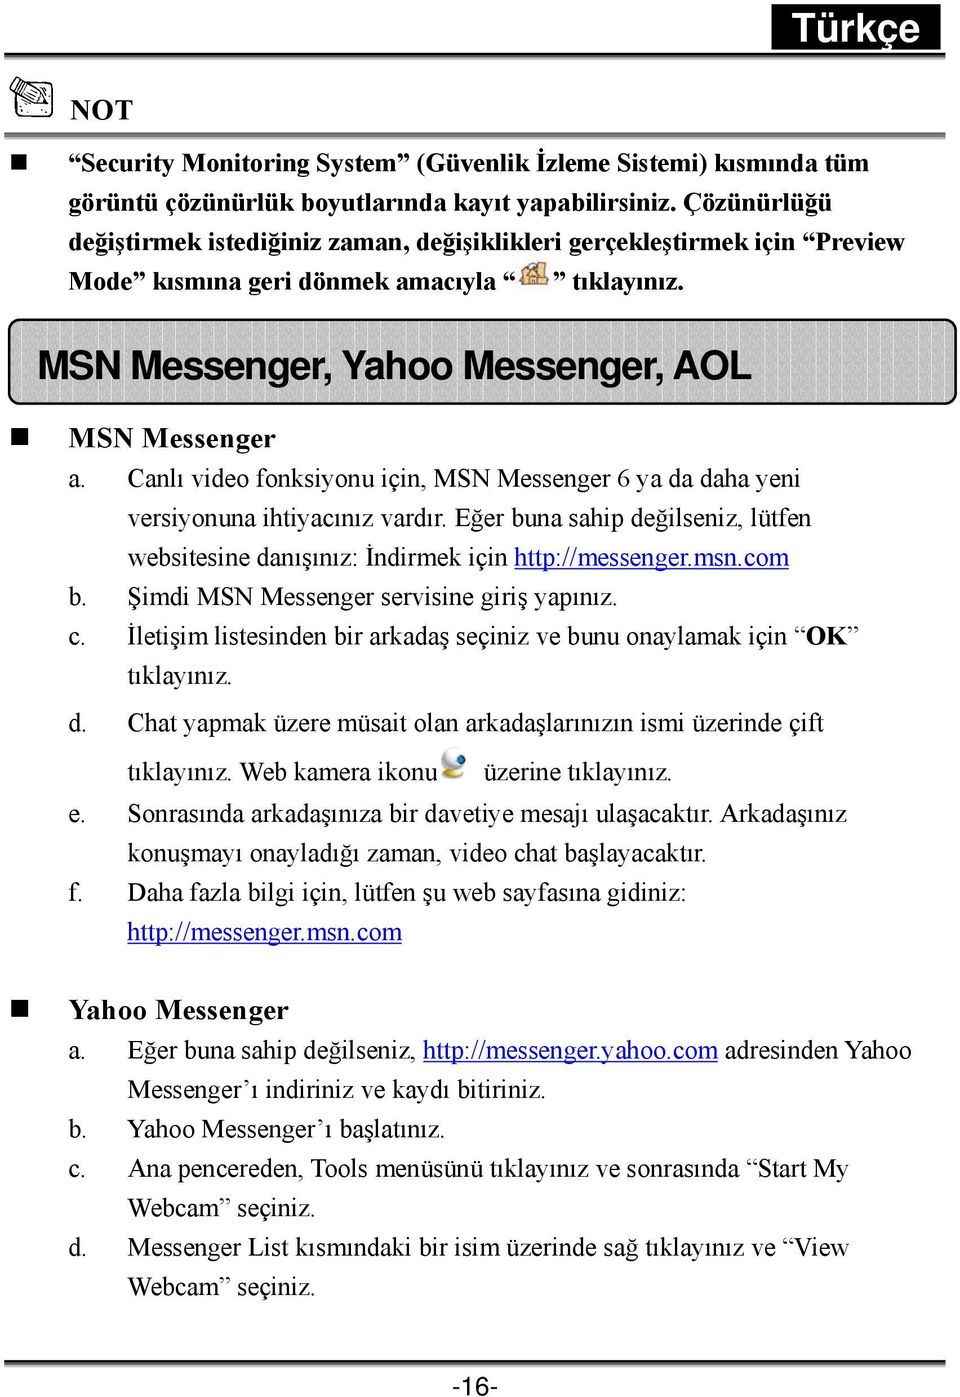 Canlı video fonksiyonu için, MSN Messenger 6 ya da daha yeni versiyonuna ihtiyacınız vardır. Eğer buna sahip değilseniz, lütfen websitesine danışınız: İndirmek için http://messenger.msn.com b.